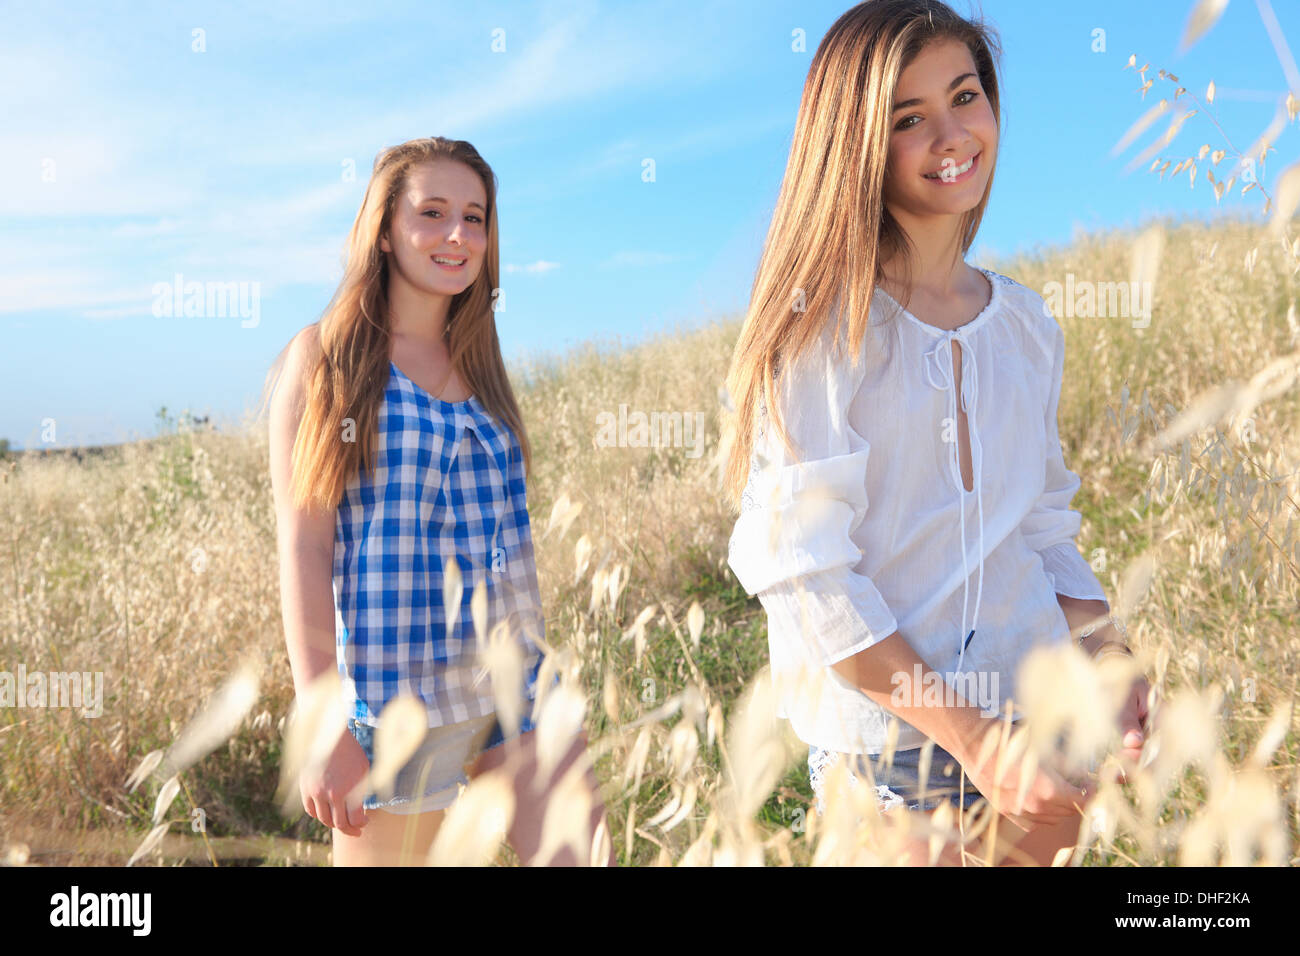 Mädchen im Teenageralter im Feld, Toskana, Italien Stockfoto